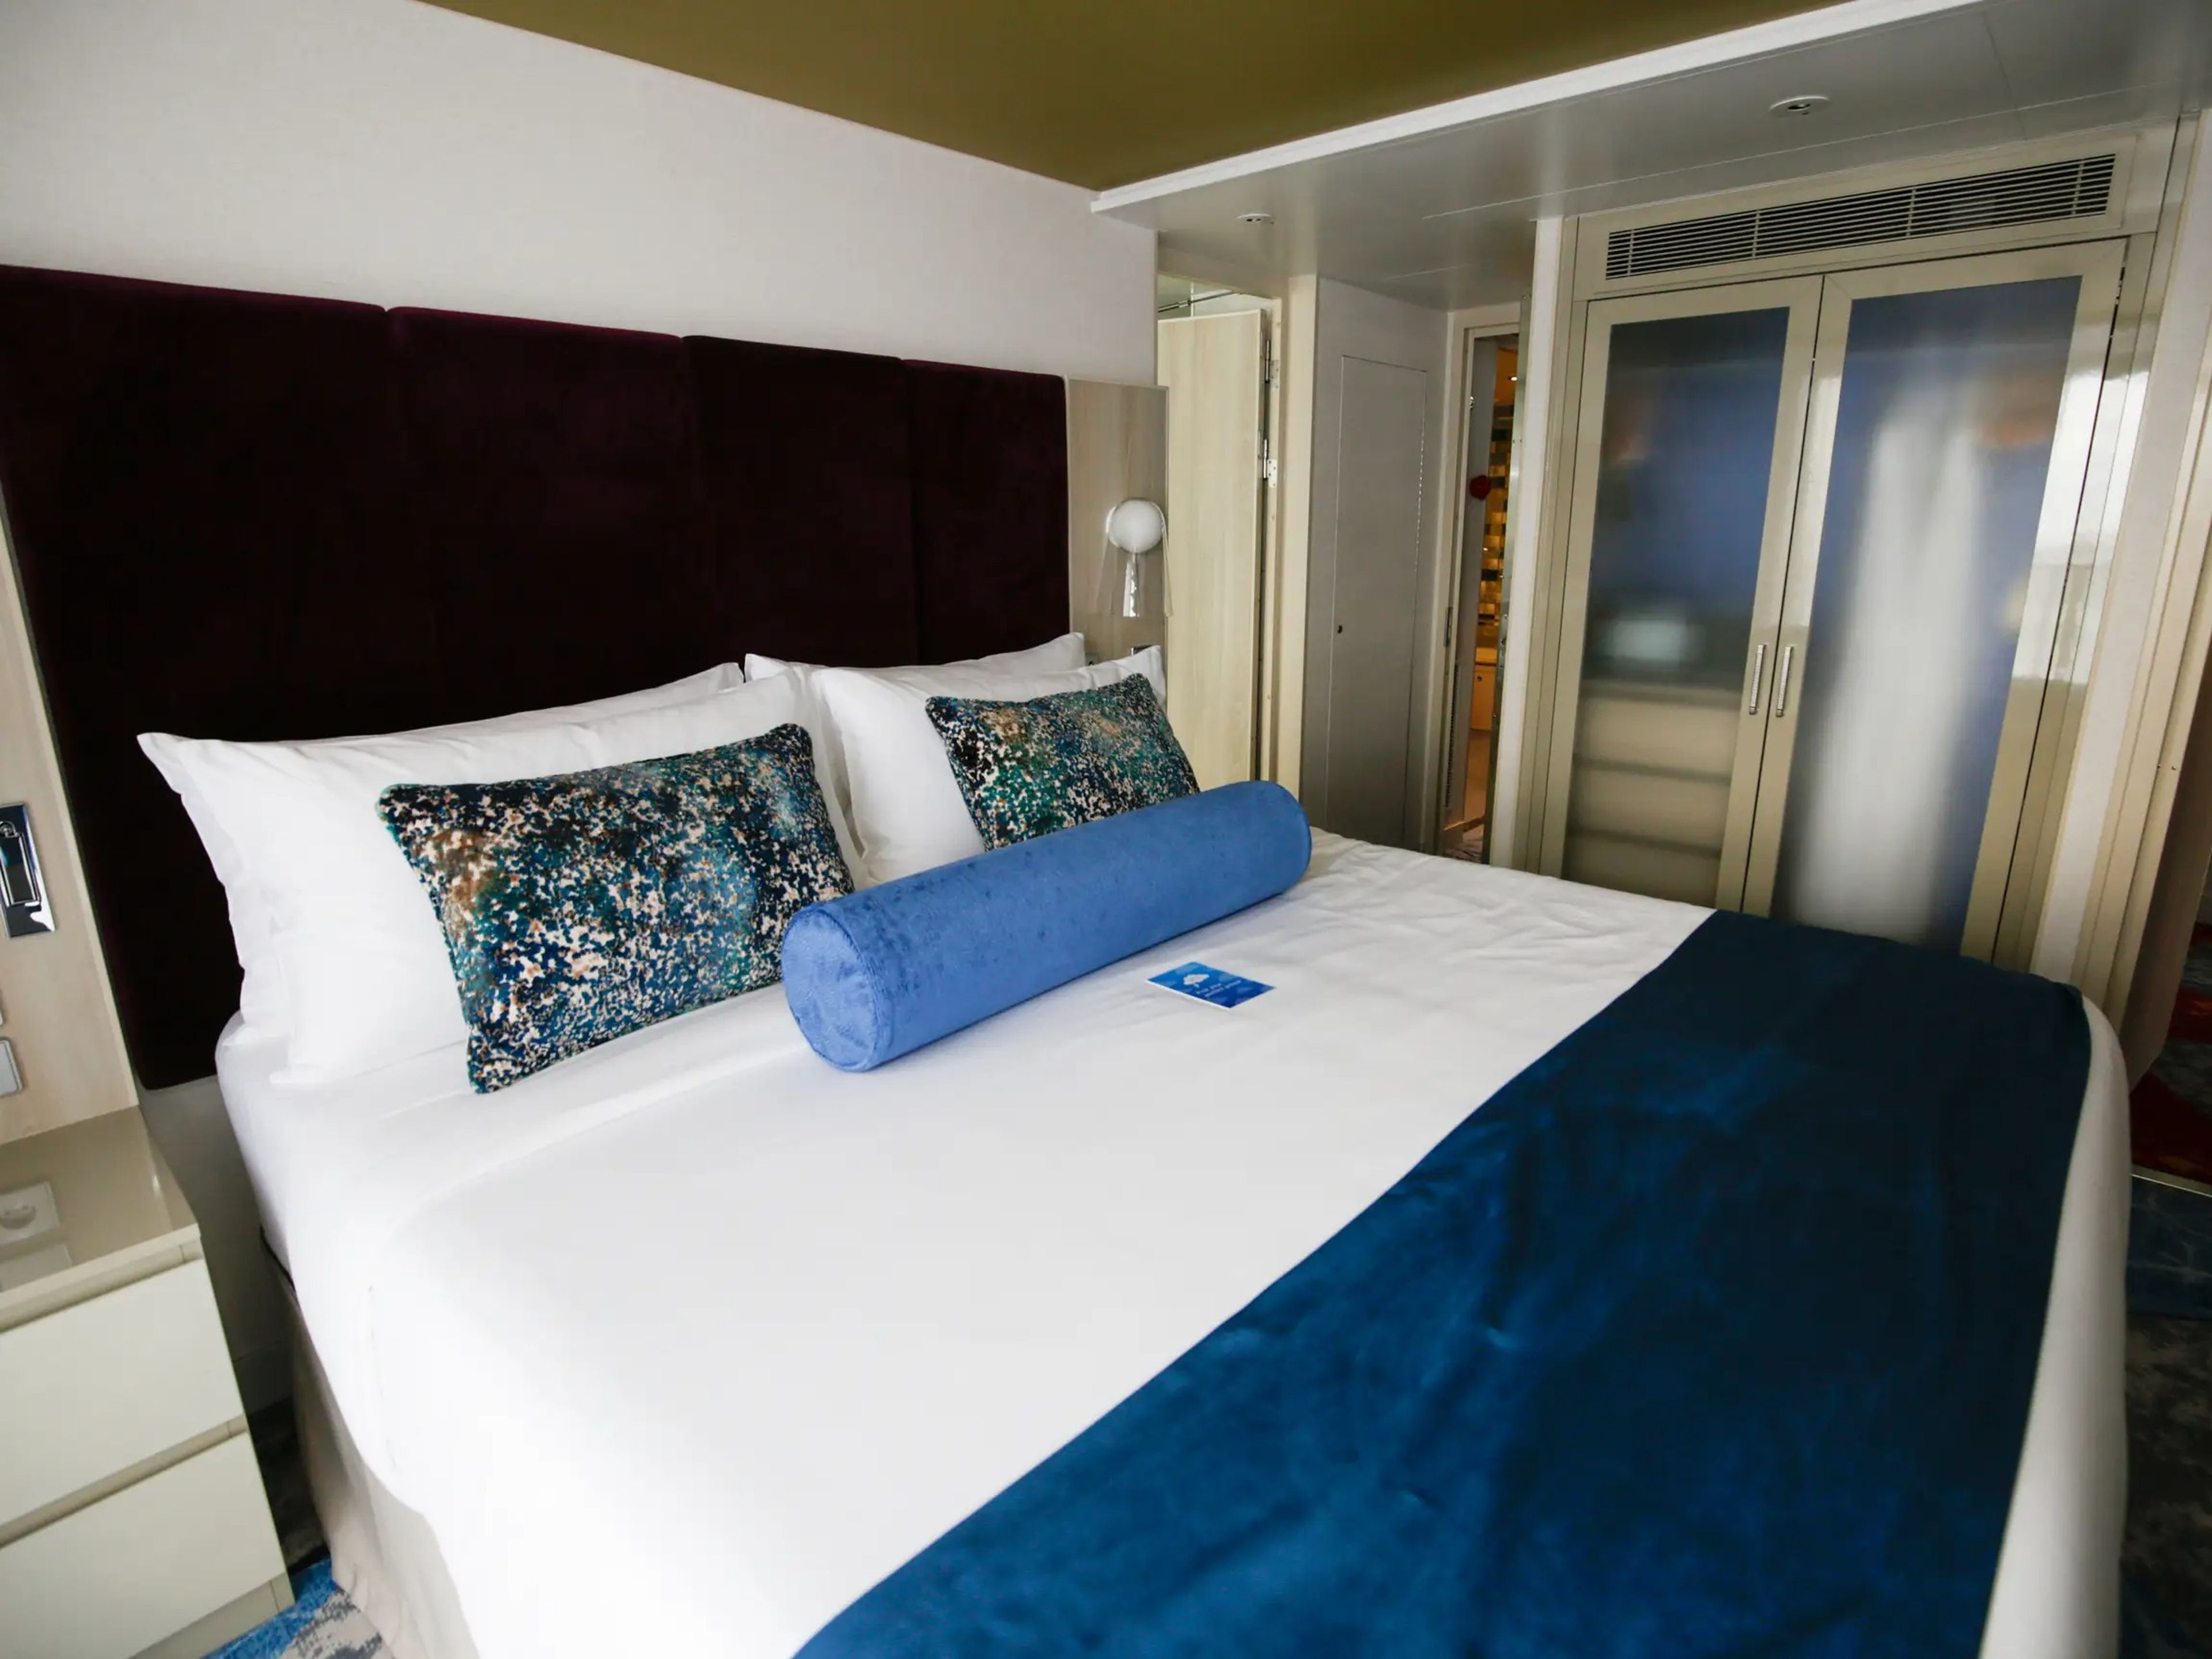 El dormitorio principal cuenta con comodidades de crucero de lujo, como balcón y cuarto de baño privado.